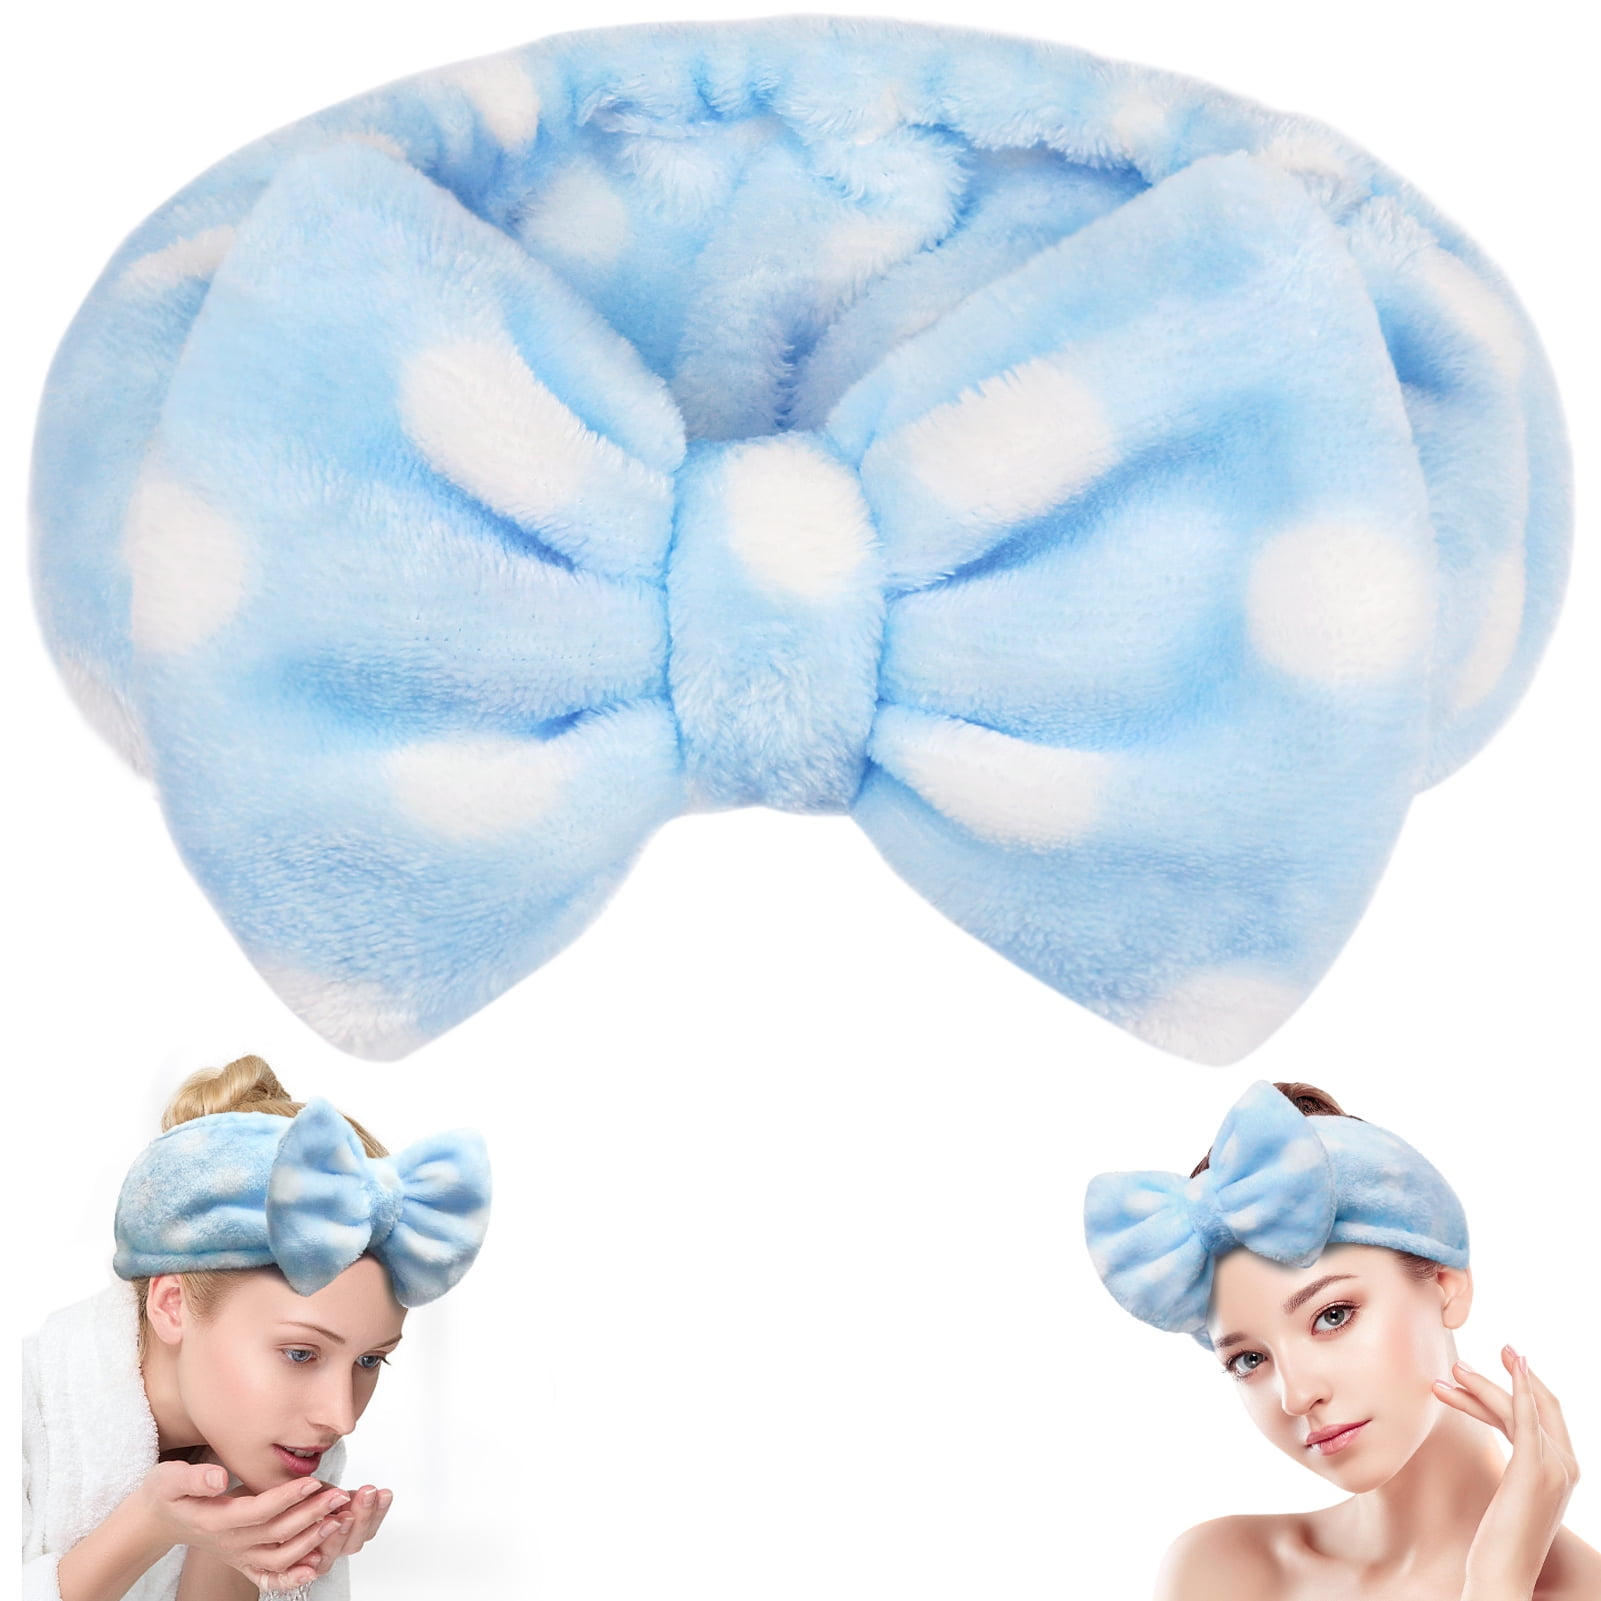 Spa Headband Bowknot Elastic Hair Band For Women Makeup Face Washing Light Blue Polka Dots